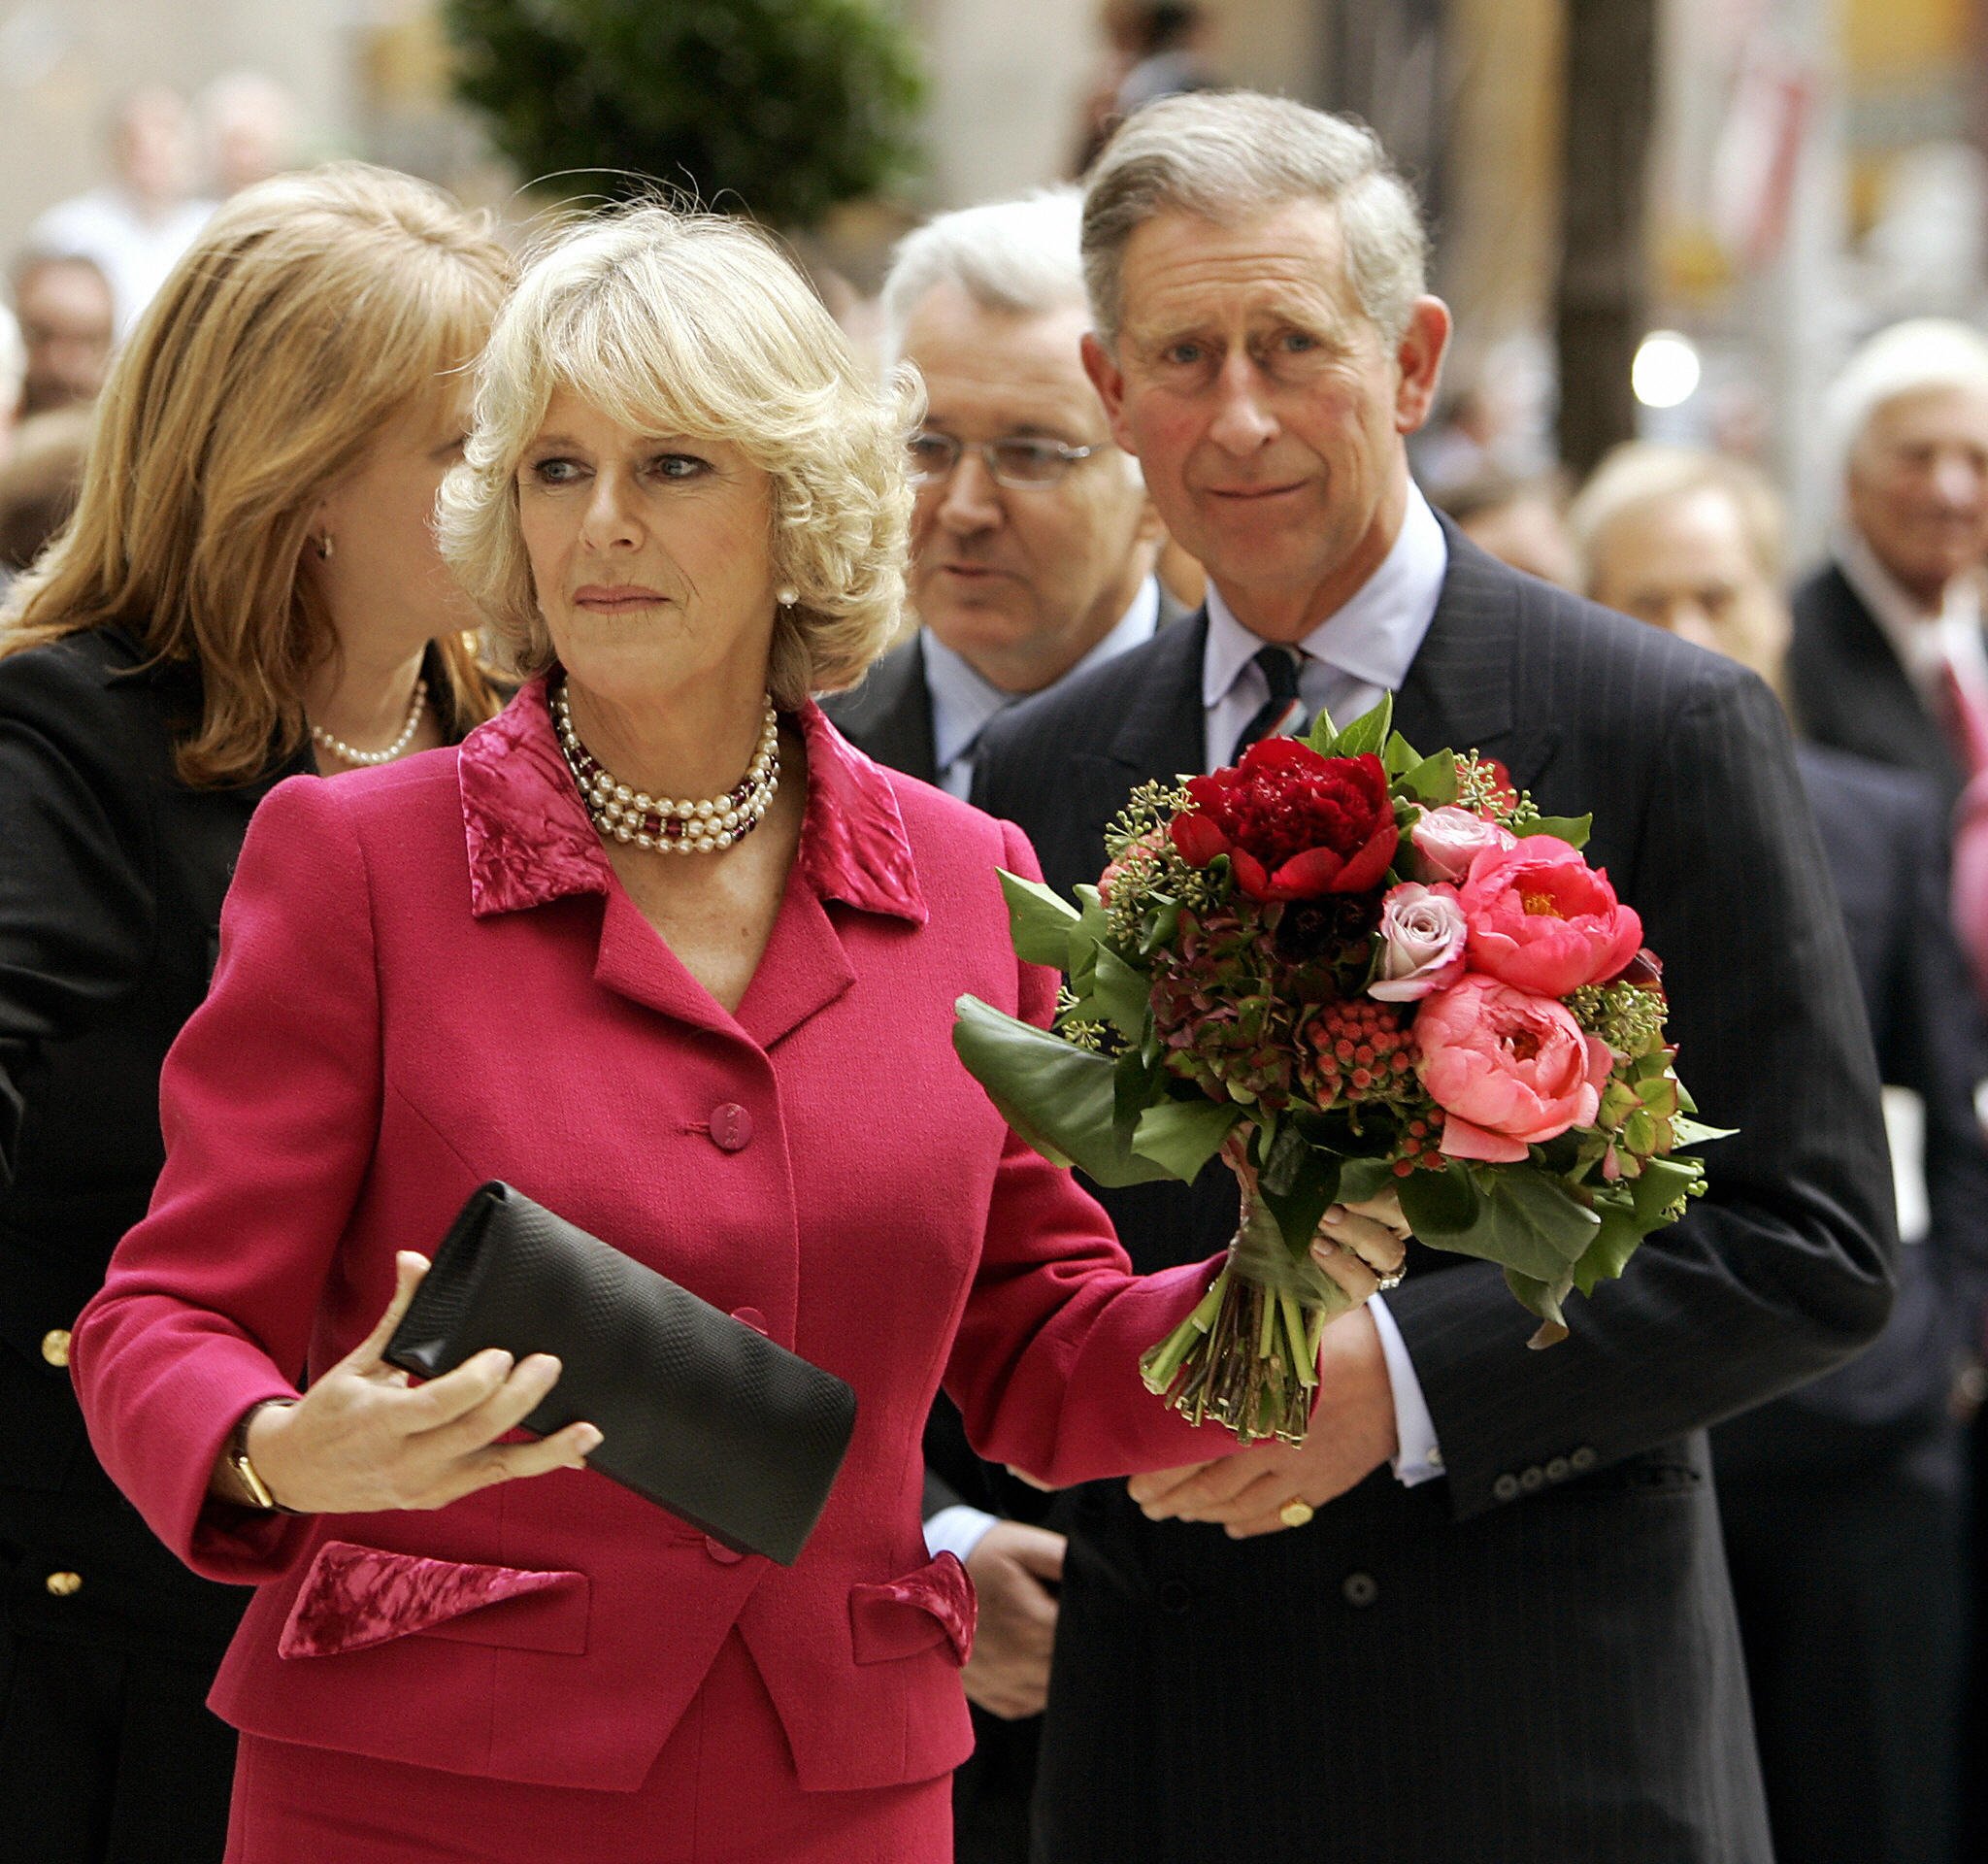 Le prince Charles de Grande-Bretagne et son épouse, Camilla, duchesse de Cornouailles, se promènent dans le jardin avant de dévoiler la pierre centrale du British Memorial Garden à Hanover Square, dans le Lower Manhattan, le 1er novembre 2005. | Source : Getty Images  